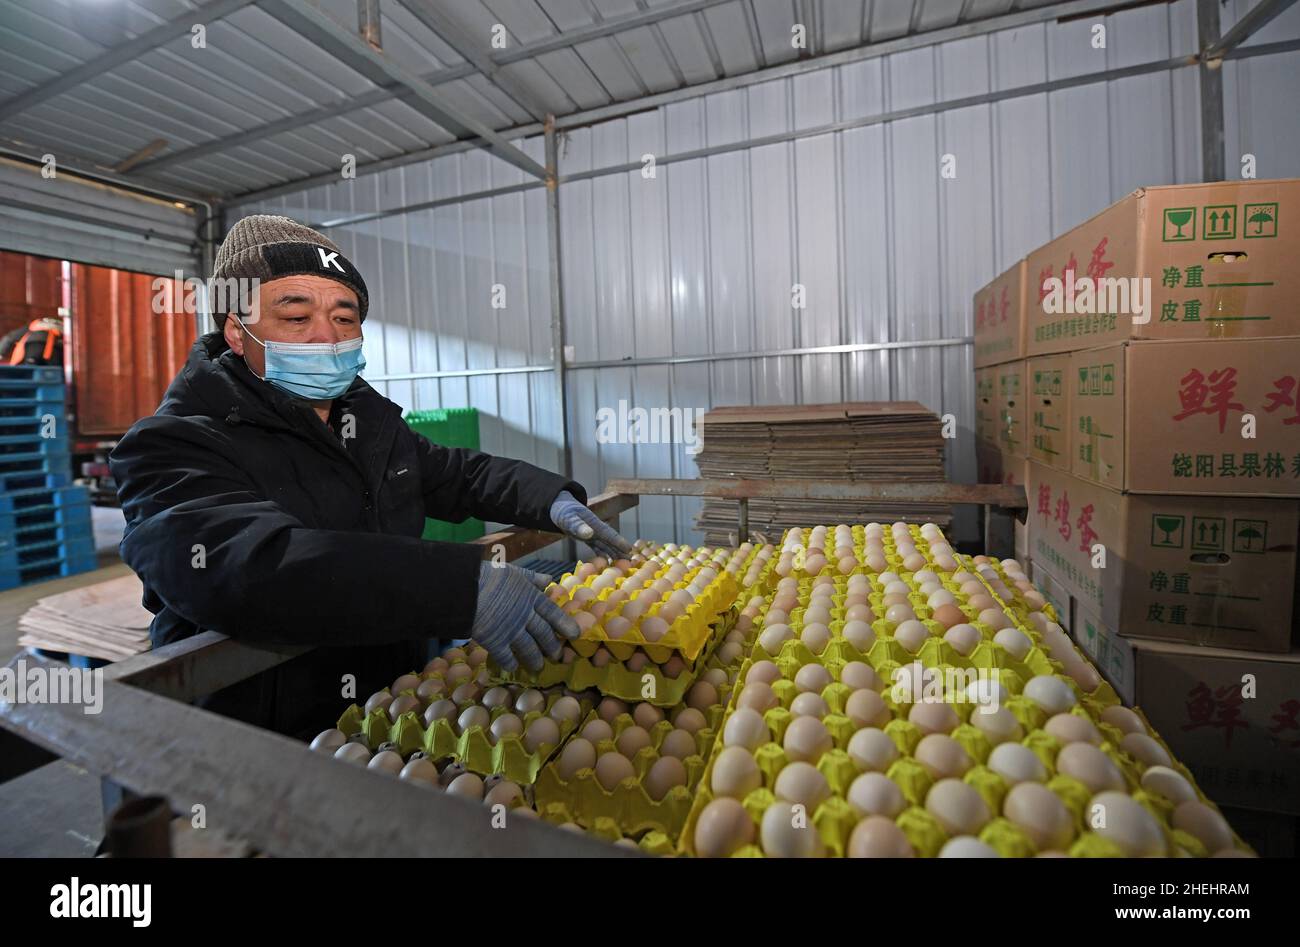 (220111) -- TIANJIN, le 11 janvier 2022 (Xinhua) -- Un travailleur trie les œufs sur un marché de Tianjin, dans le nord de la Chine, le 11 janvier 2022.La municipalité de Tianjin en Chine du Nord, qui a été témoin de la dernière résurgence de la COVID-19, a lancé un mécanisme d'intervention d'urgence pour garantir l'approvisionnement en produits de première nécessité quotidiens.selon le bureau de commerce municipal de Tianjin, les autorités locales ont mobilisé les principaux fournisseurs de gros,supermarchés et marchés des légumes pour ajouter des stocks afin de faire face à la demande du marché pour la viande, les oeufs et les légumes.Actuellement, les principaux marchés de gros de la ville pour agricole pro Banque D'Images